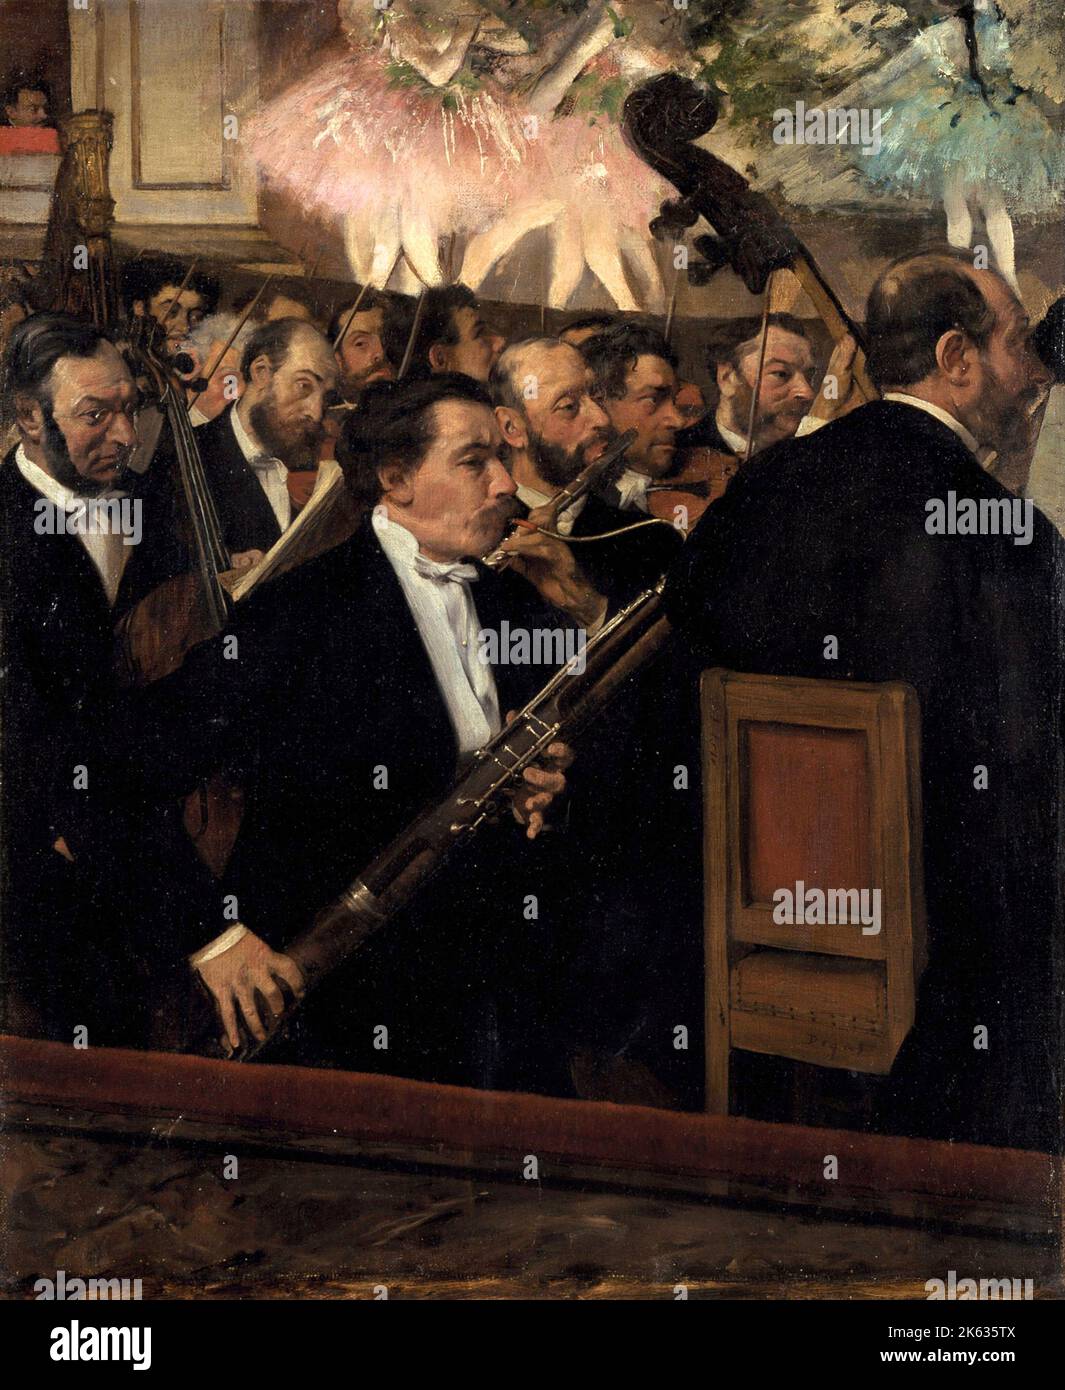 La Orquesta de la Ópera, 1870, Pintura de Edgar Degas Foto de stock